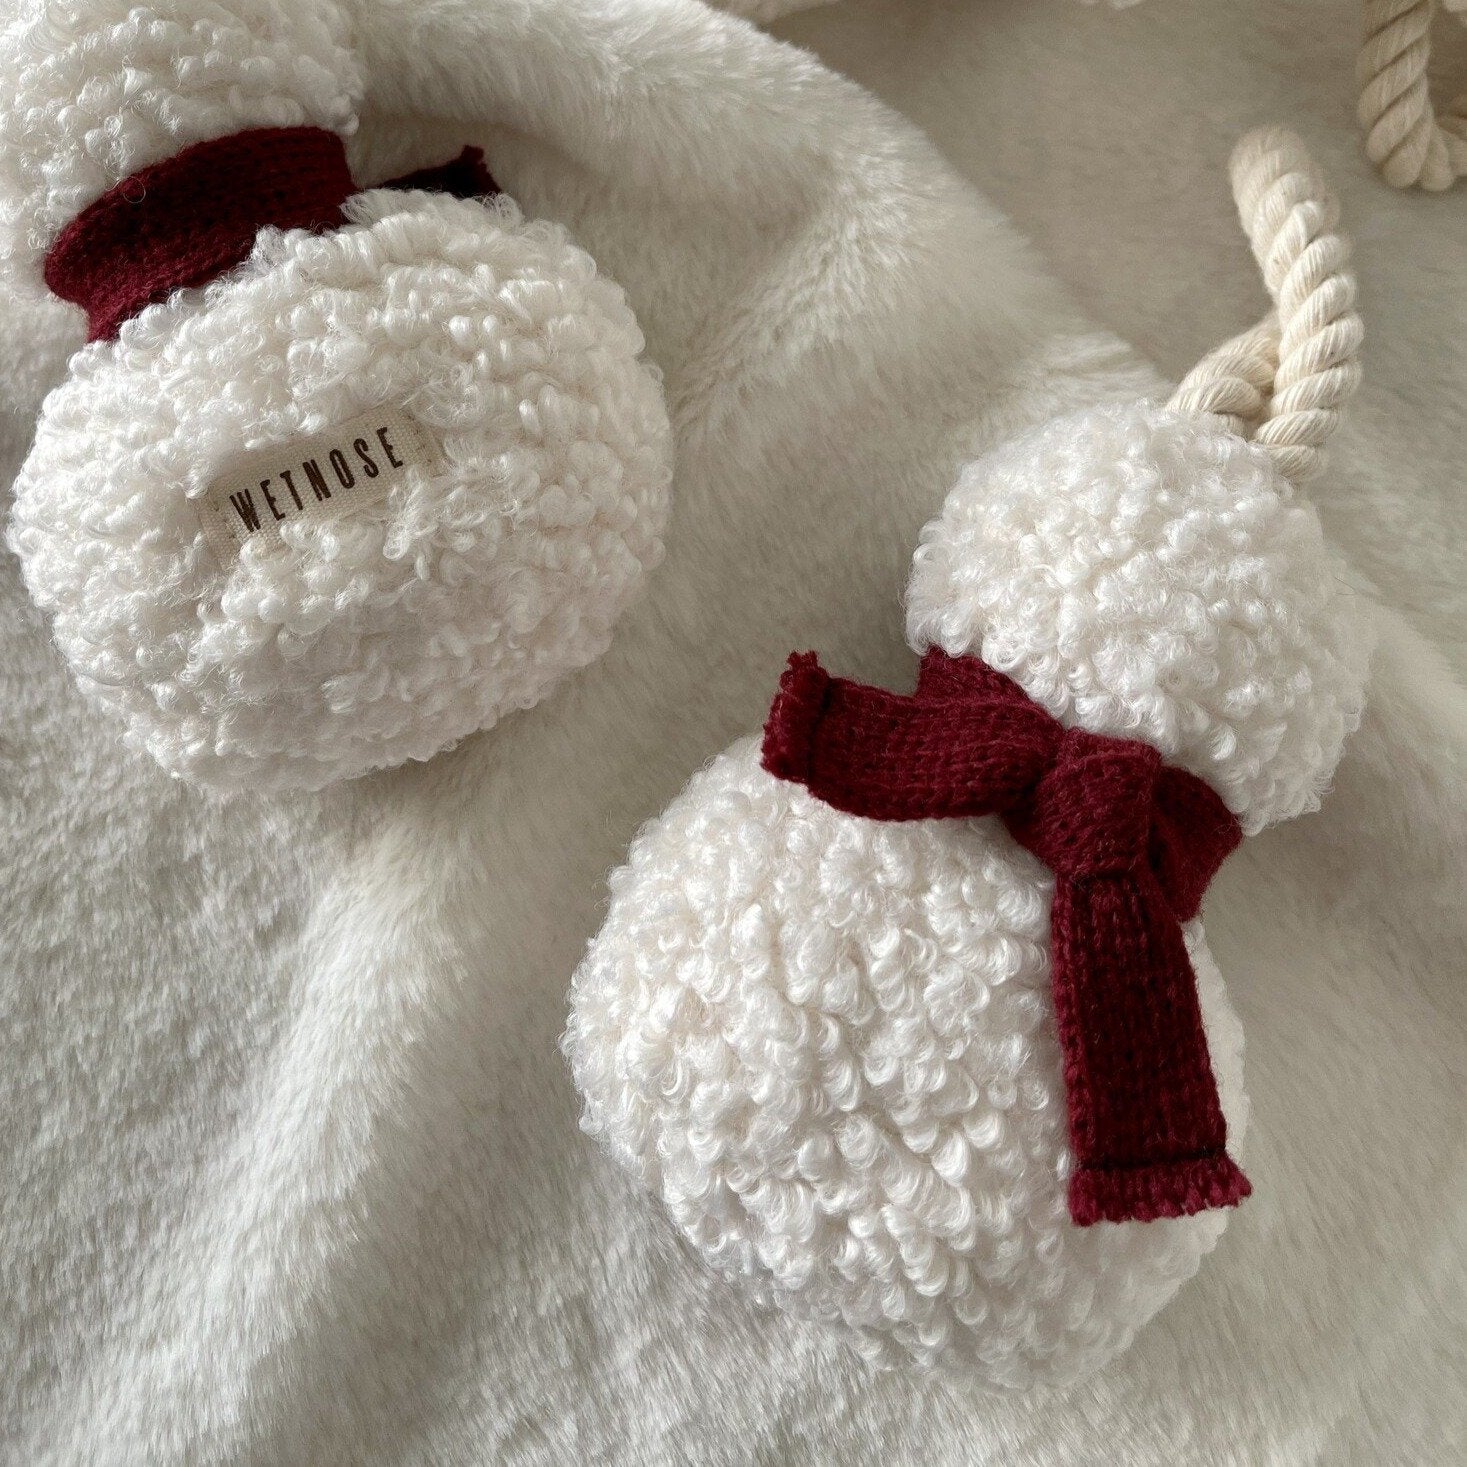 Wetnose Snowman Catnip Toy - CreatureLand